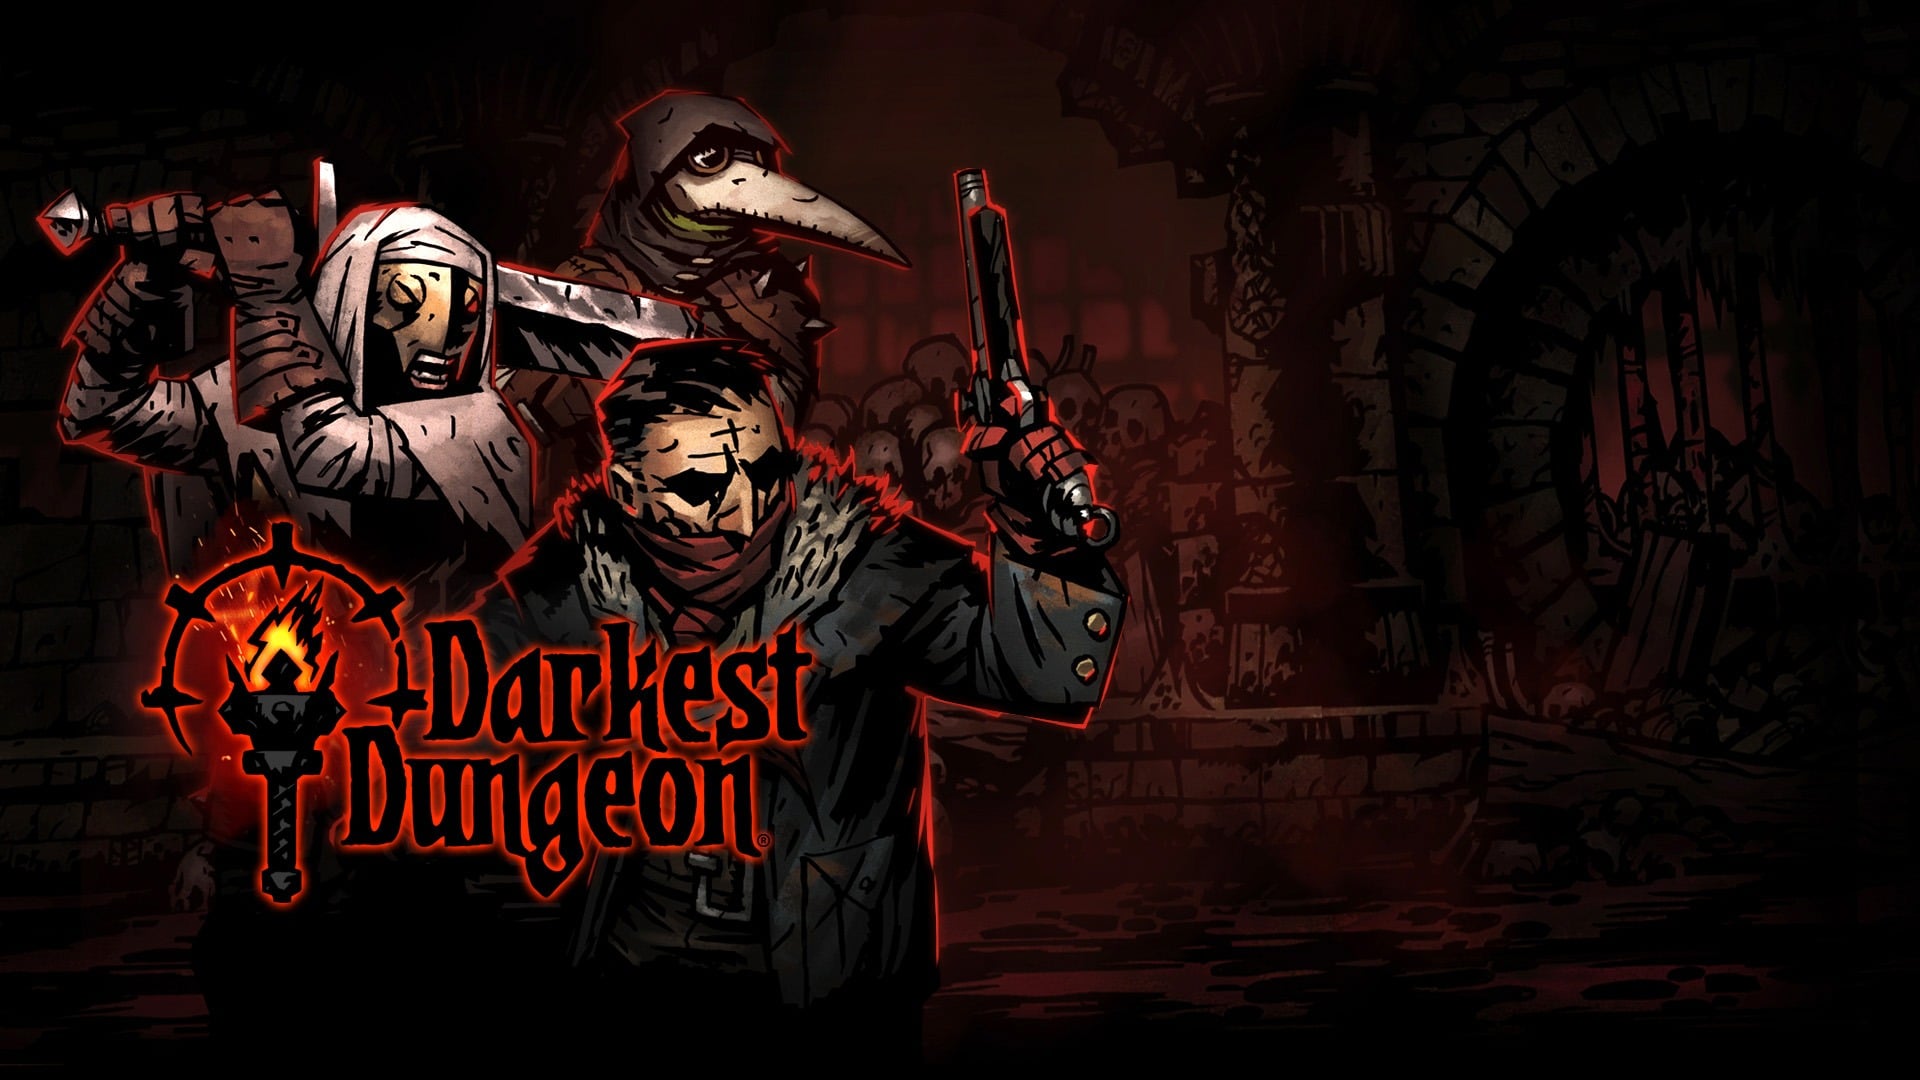 Darkest Dungeon fysieke release!